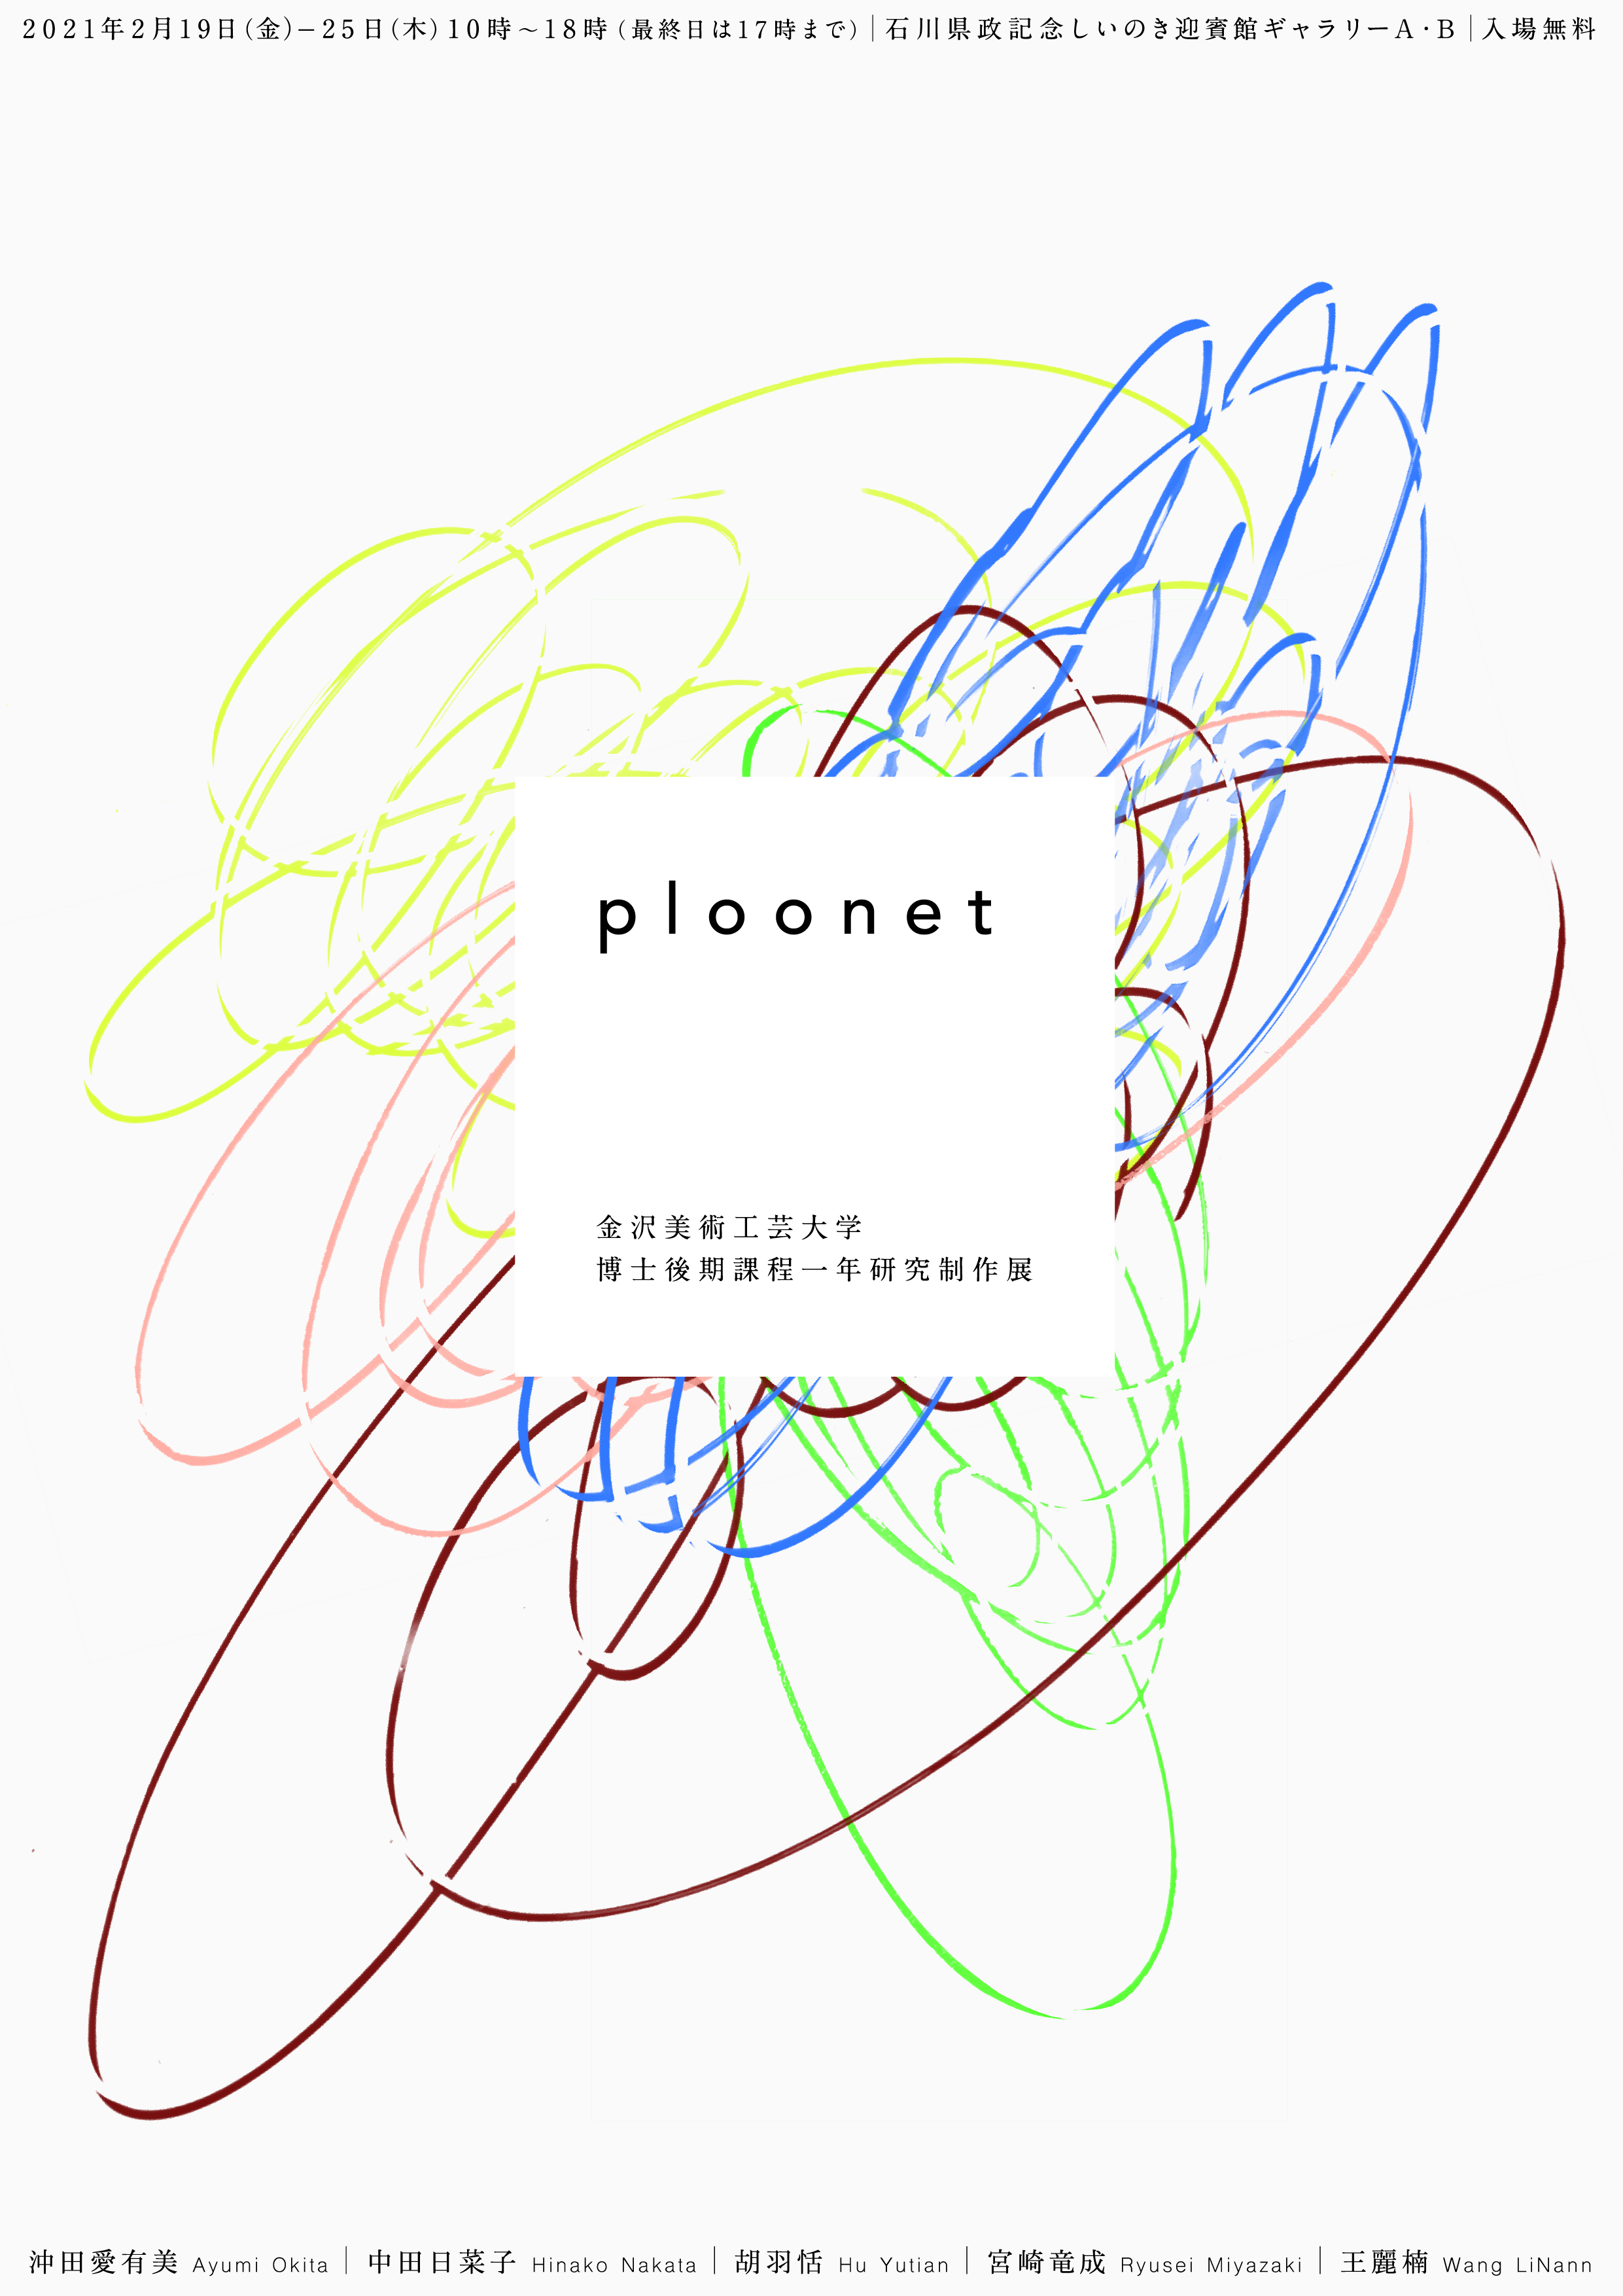 令和２年度 金沢美術工芸大学大学院 博士後期課程一年研究制作展「ploonet」